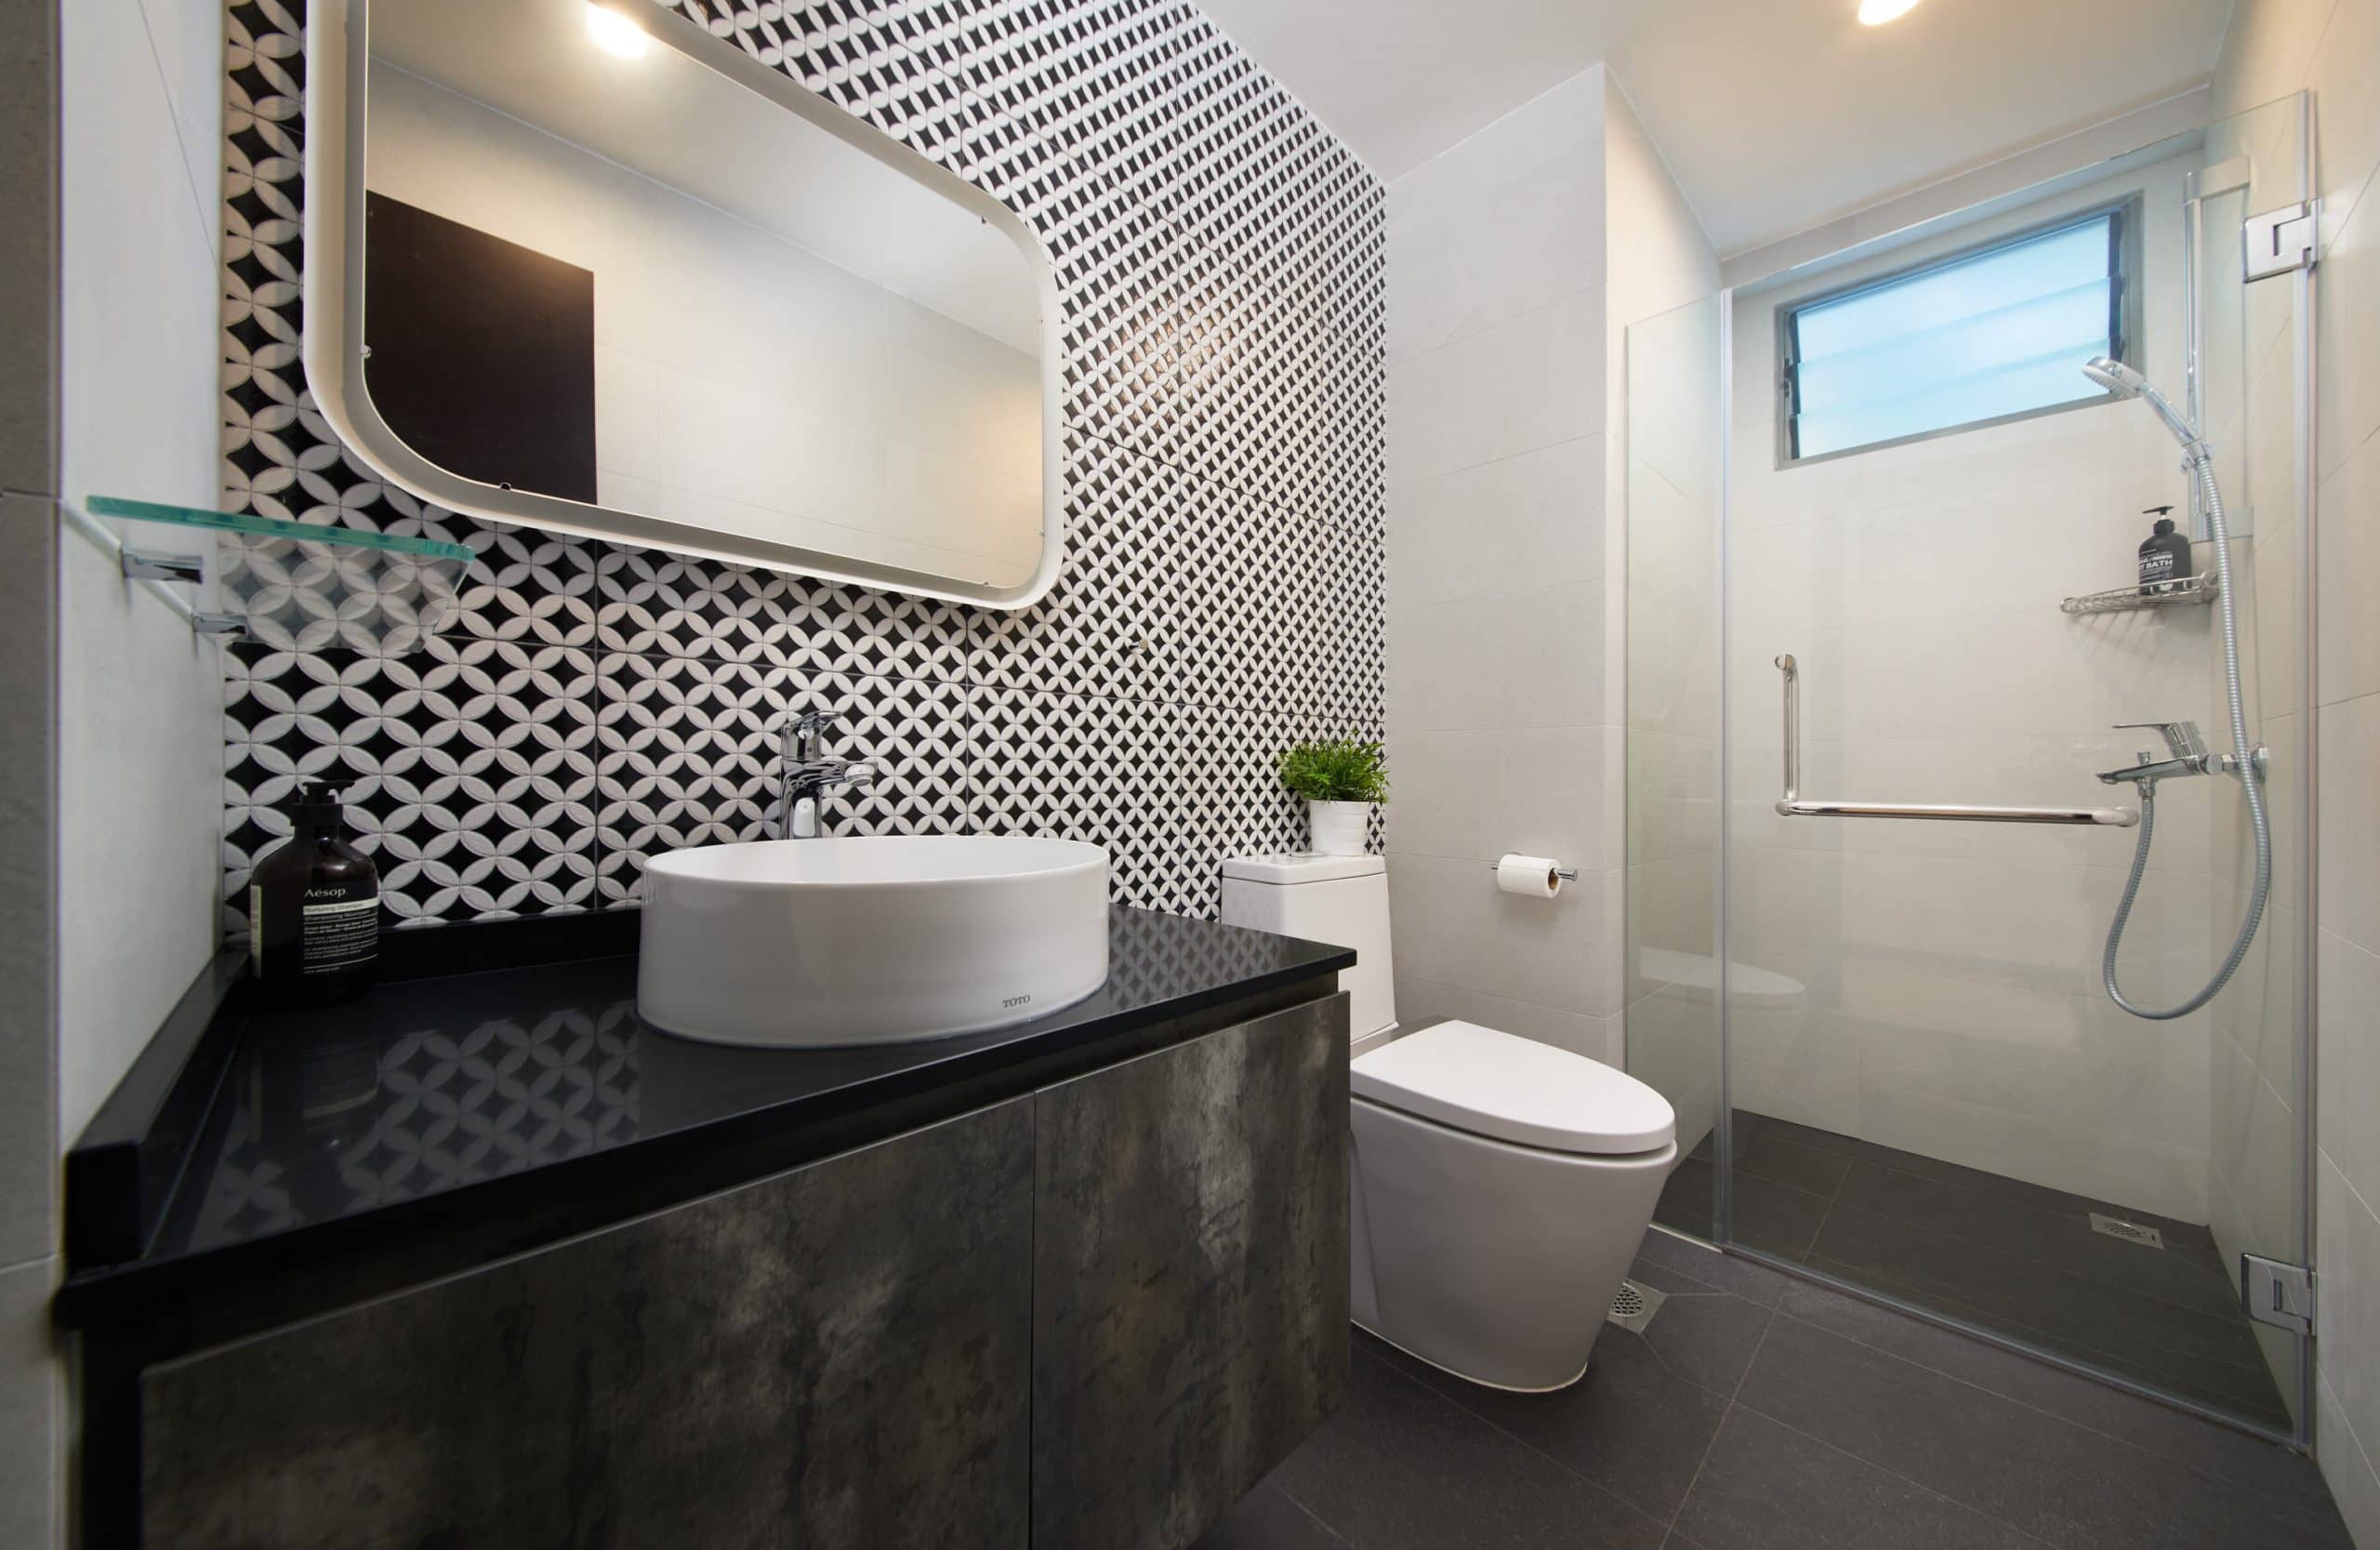 Condominium Home Interior Design Renovation At The Quintet Common Bathroom Scaled 1 